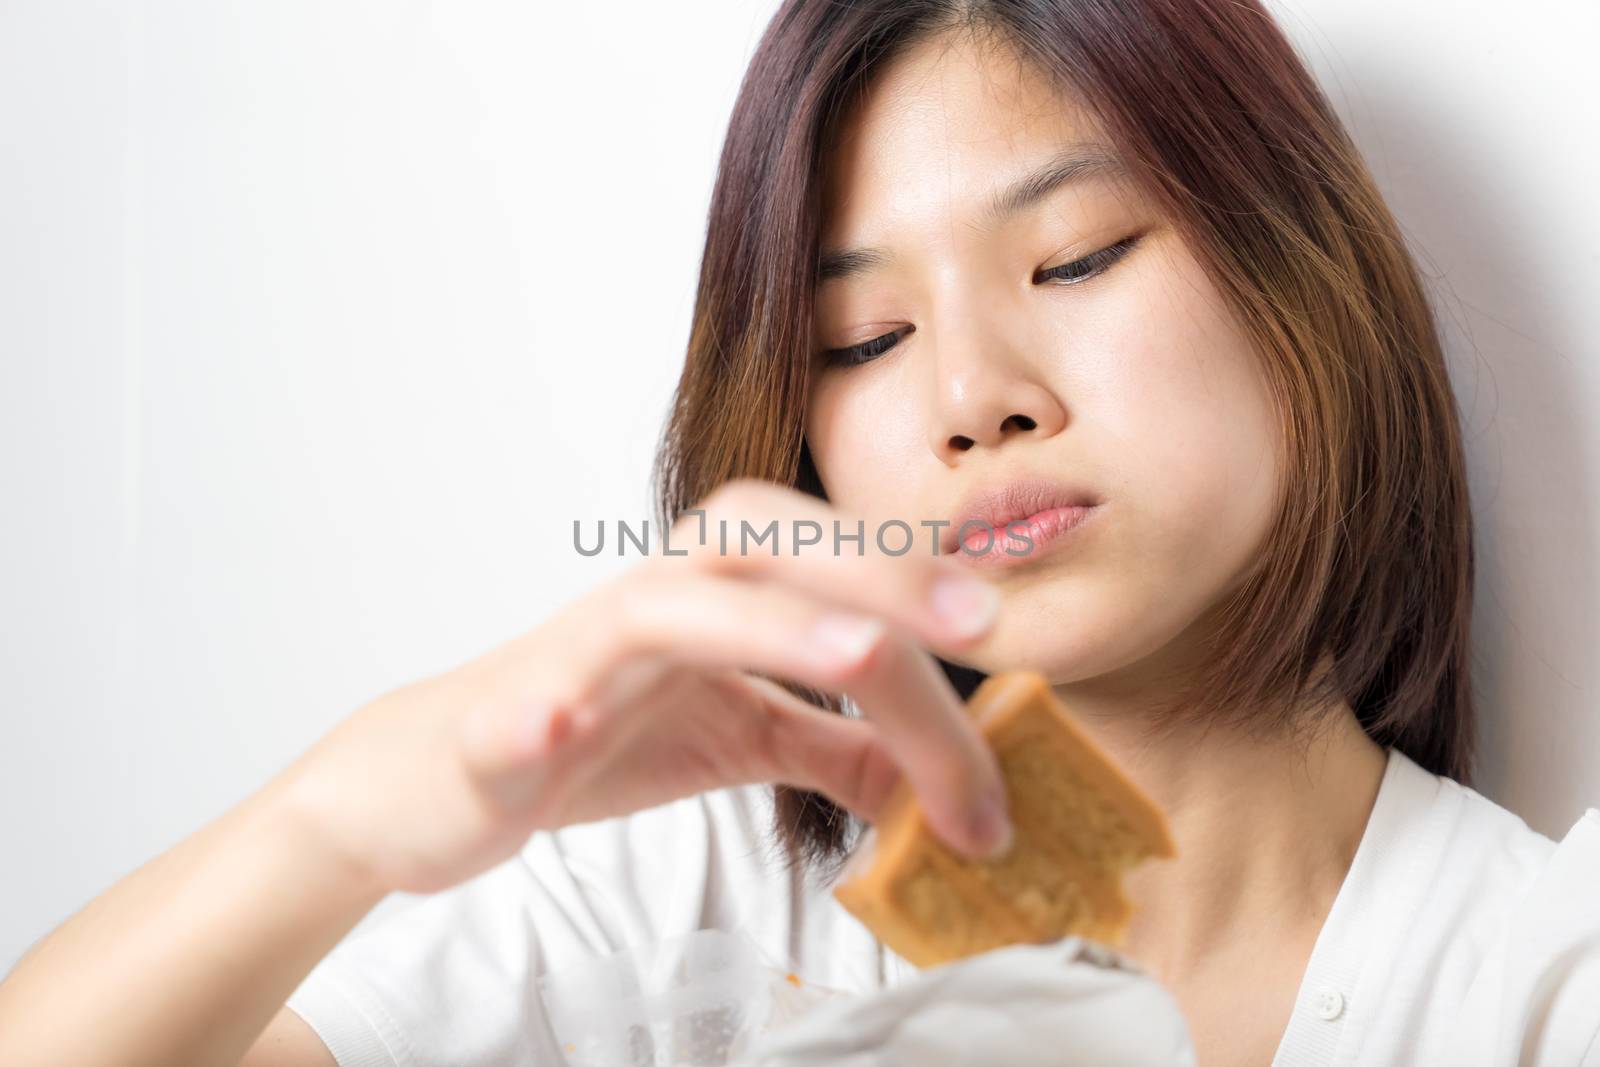 Japanese girl is enjoying the cake using her finger, on white background.